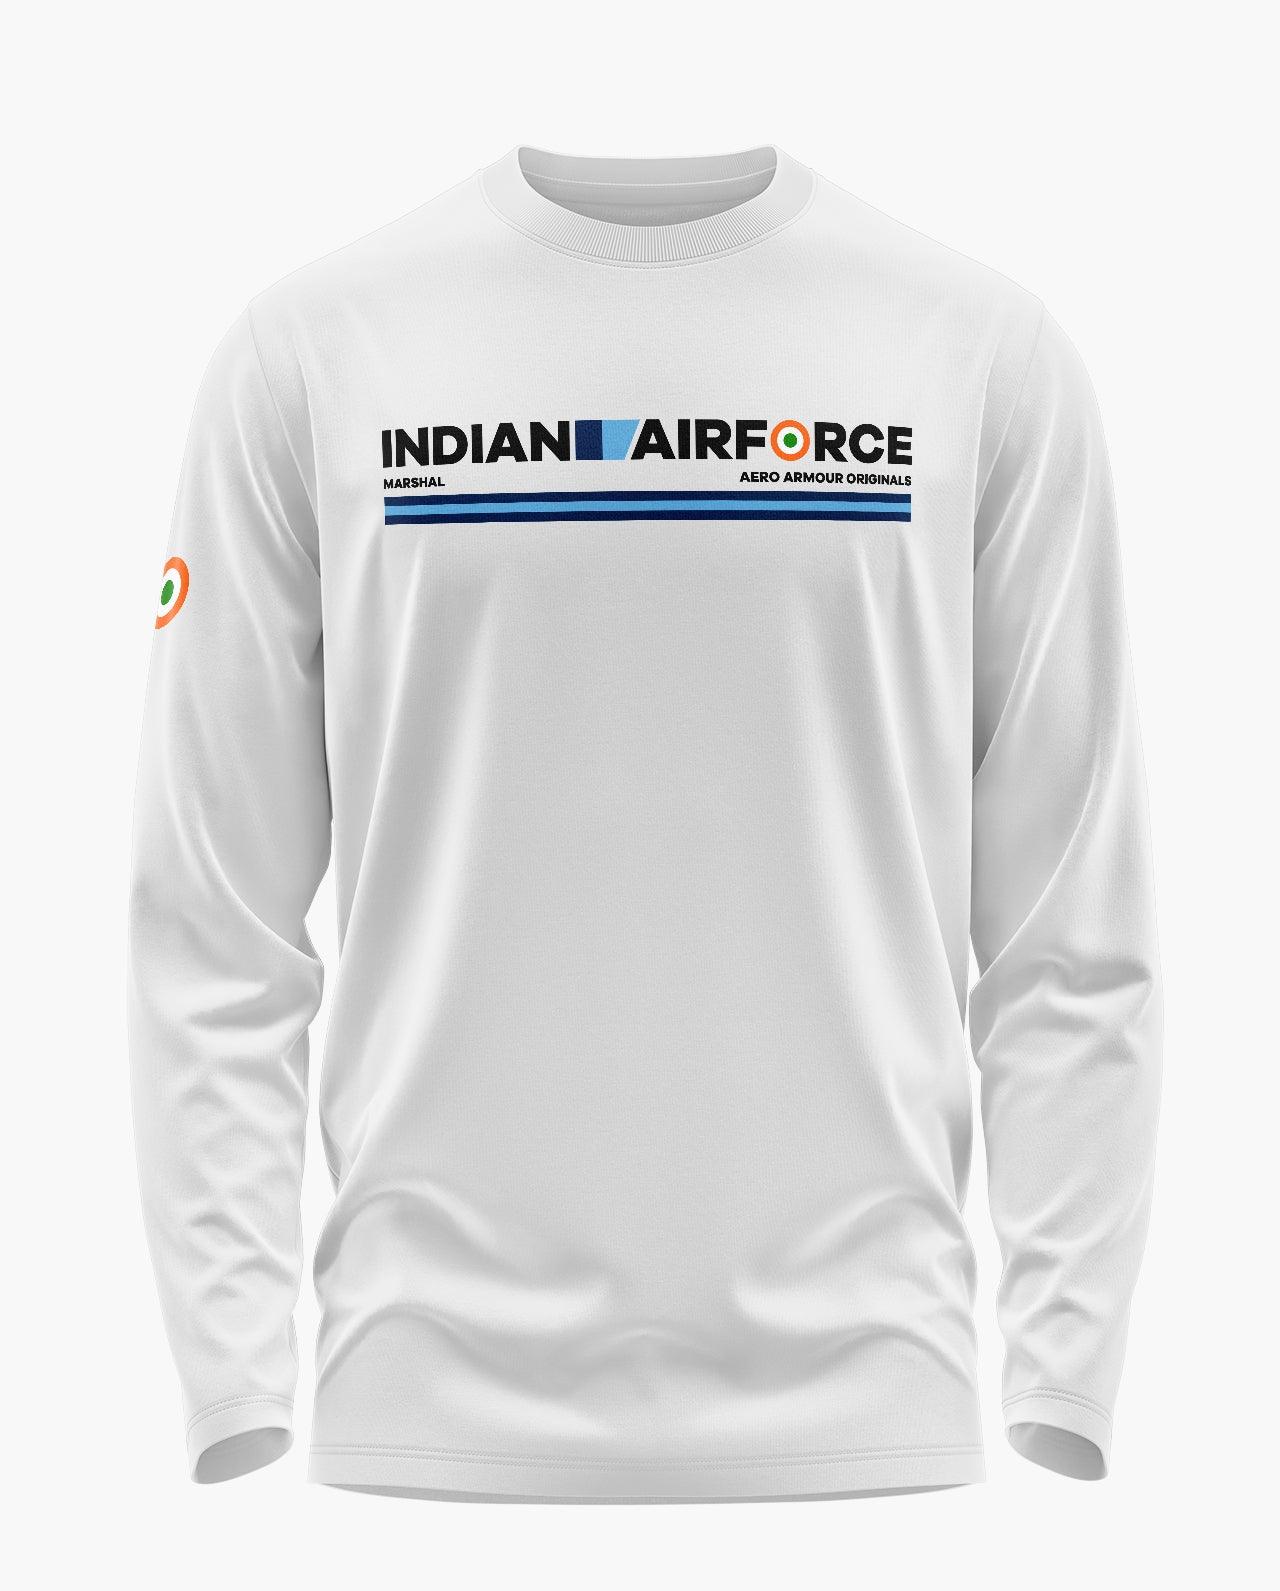 IAF Marshal Full Sleeve T-Shirt - Aero Armour